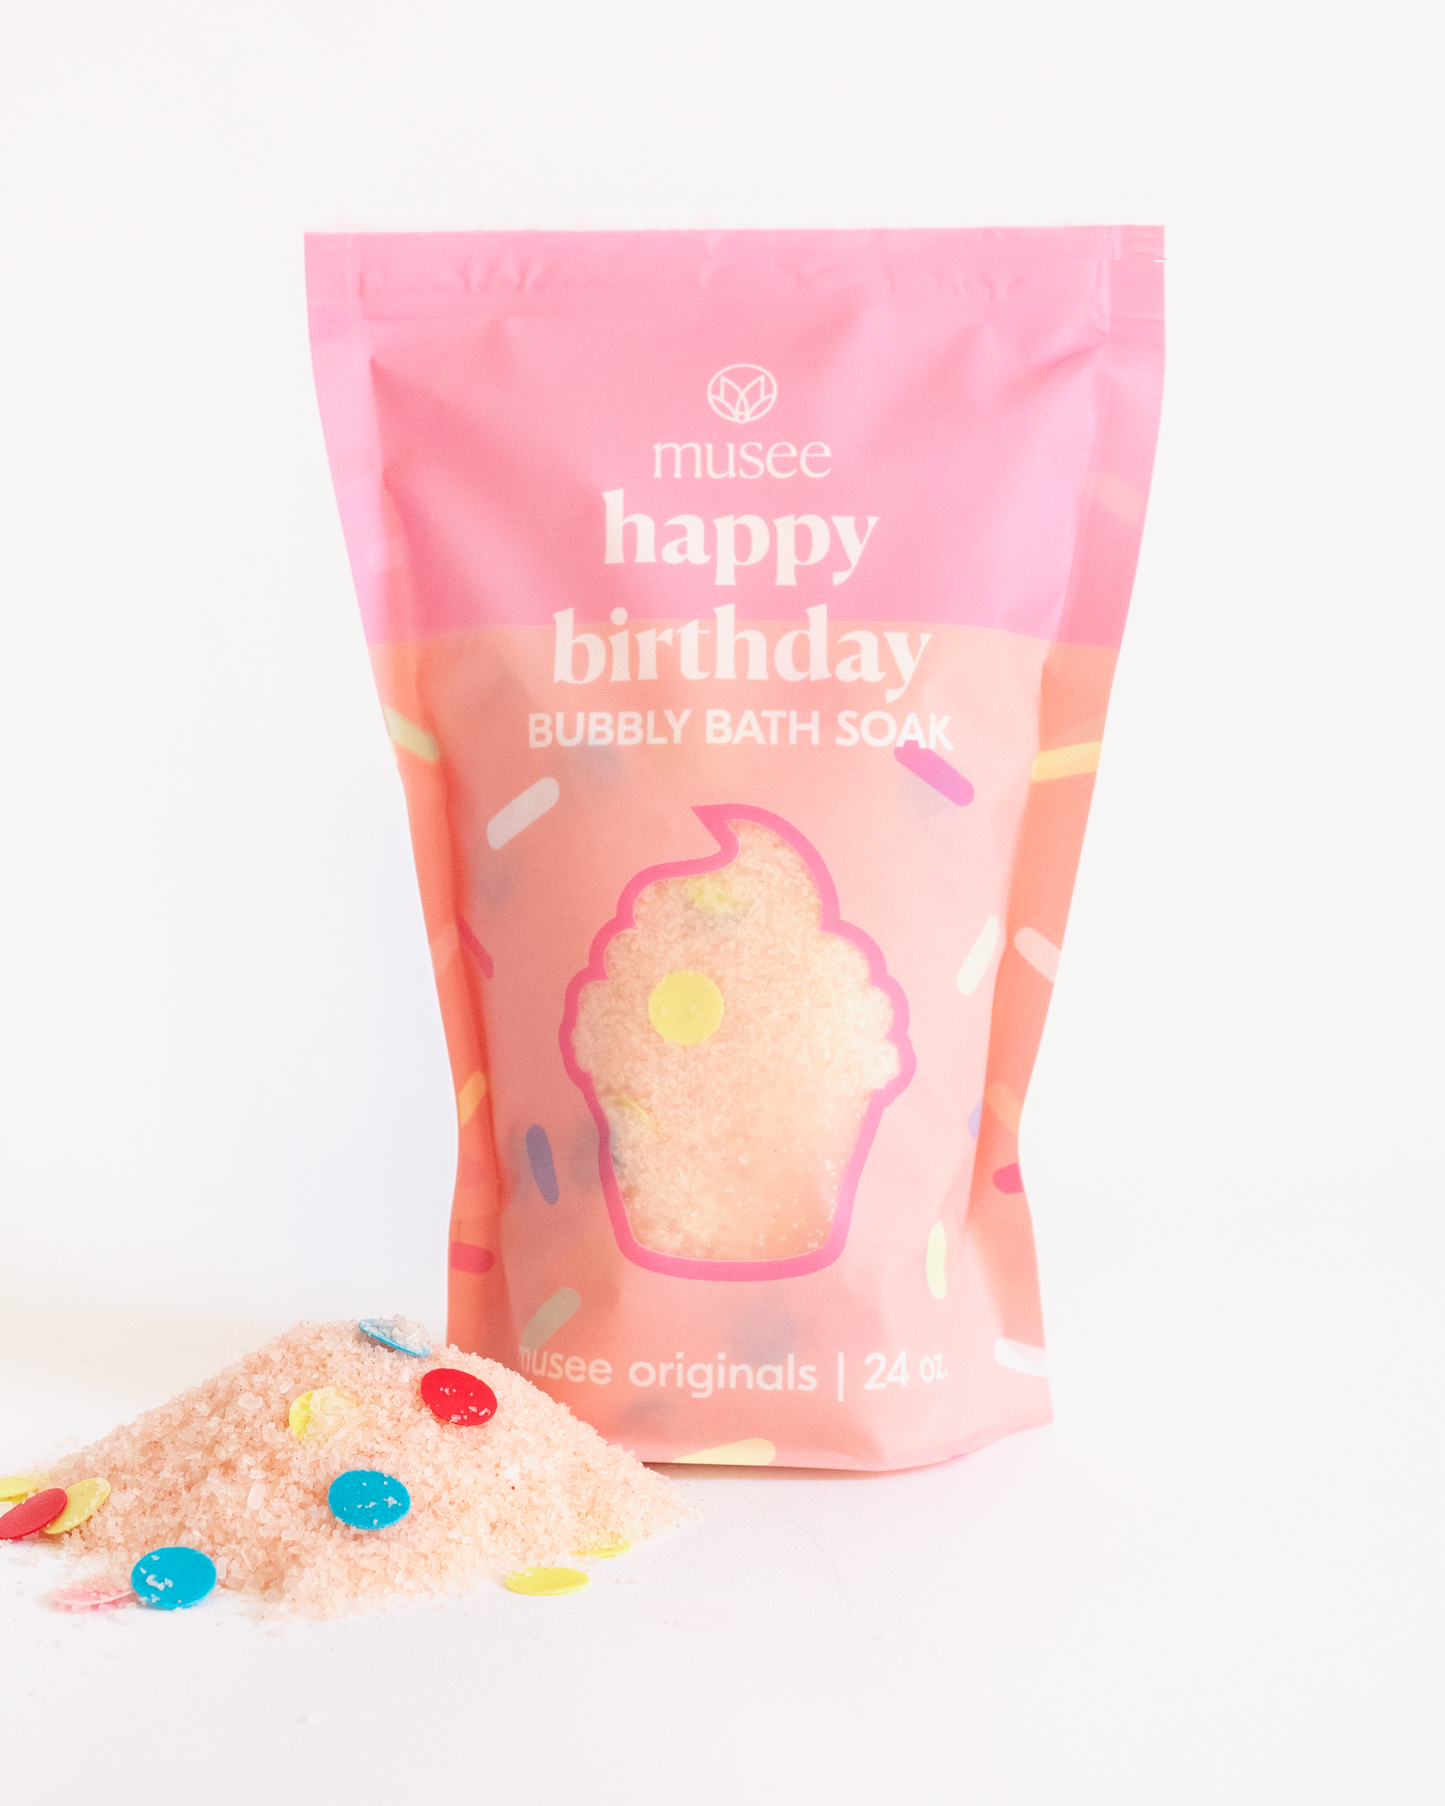 Bubbly Bath Soak: Happy Birthday